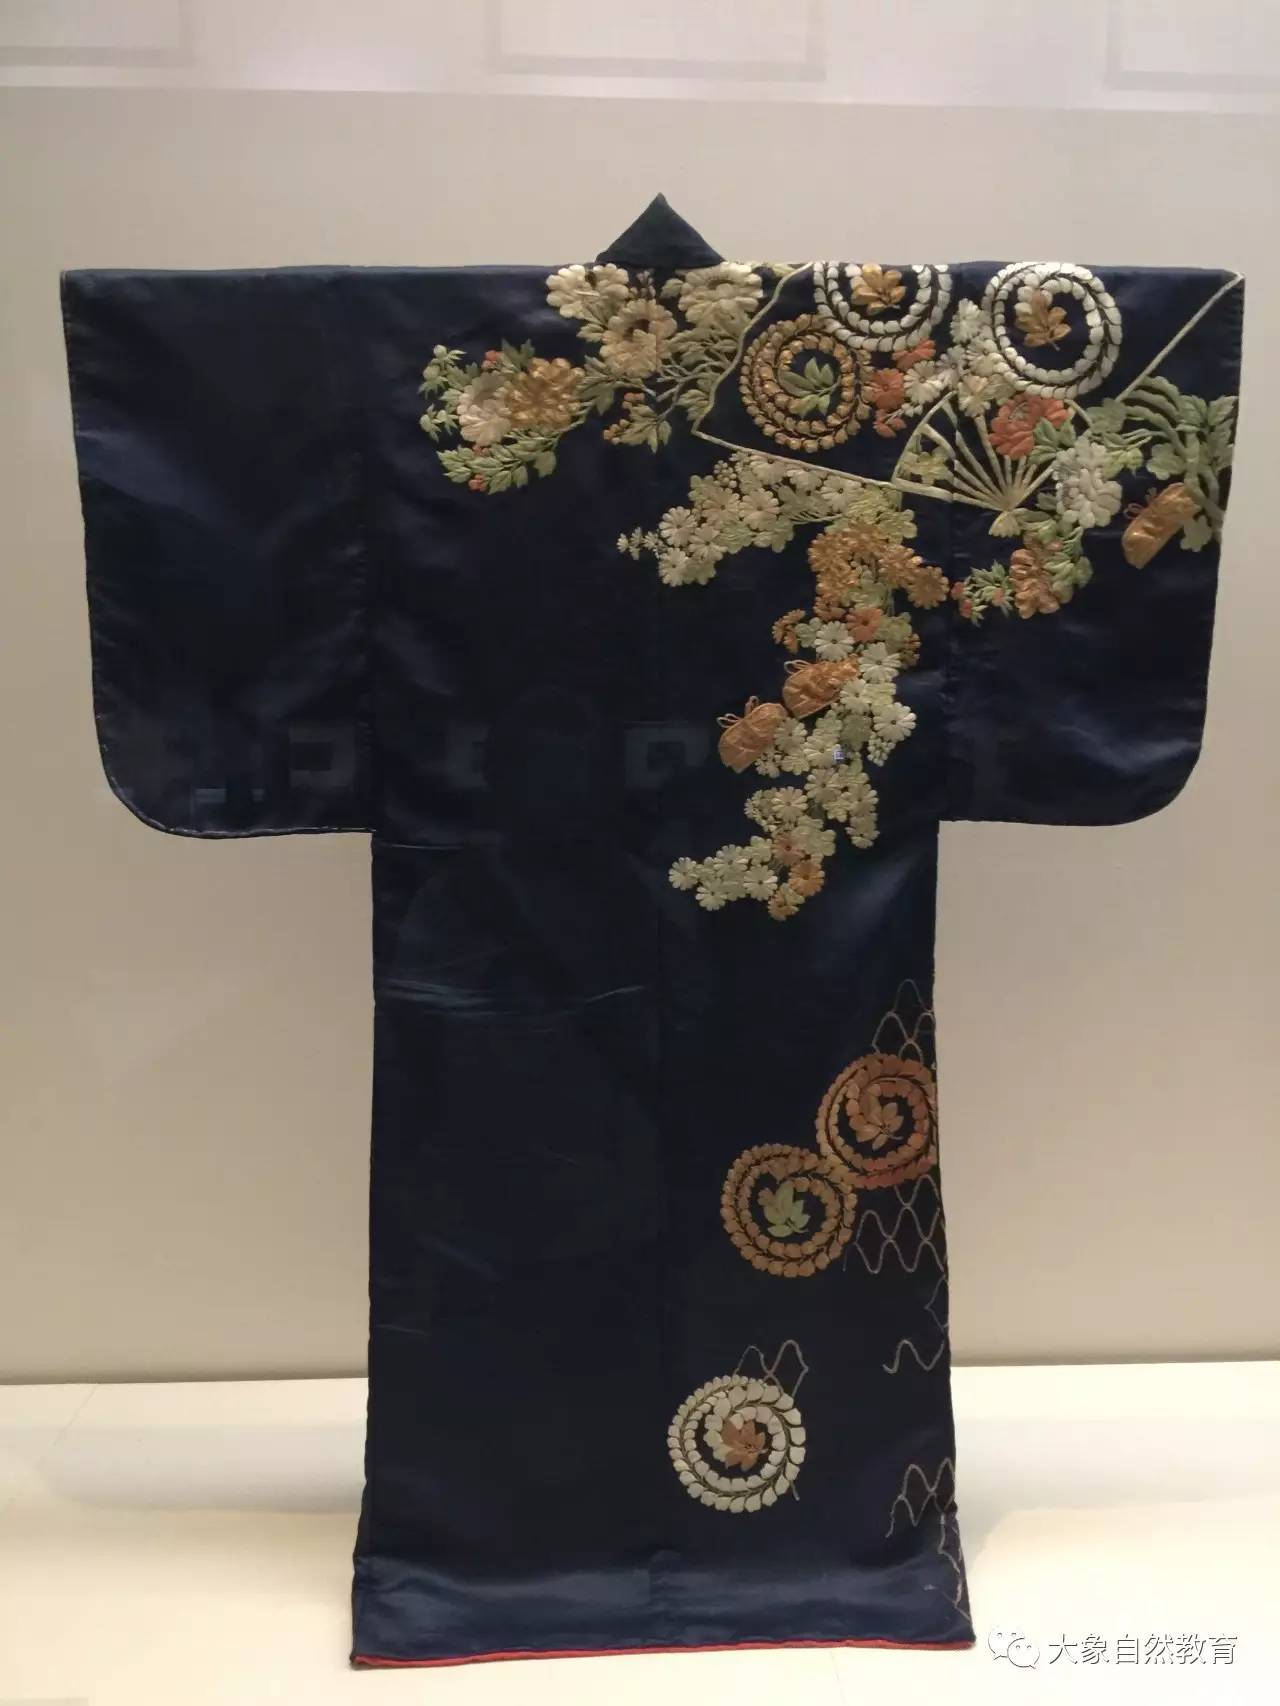 到了奈良时代,日本遣使来中国,获赠大量光彩夺目的朝服